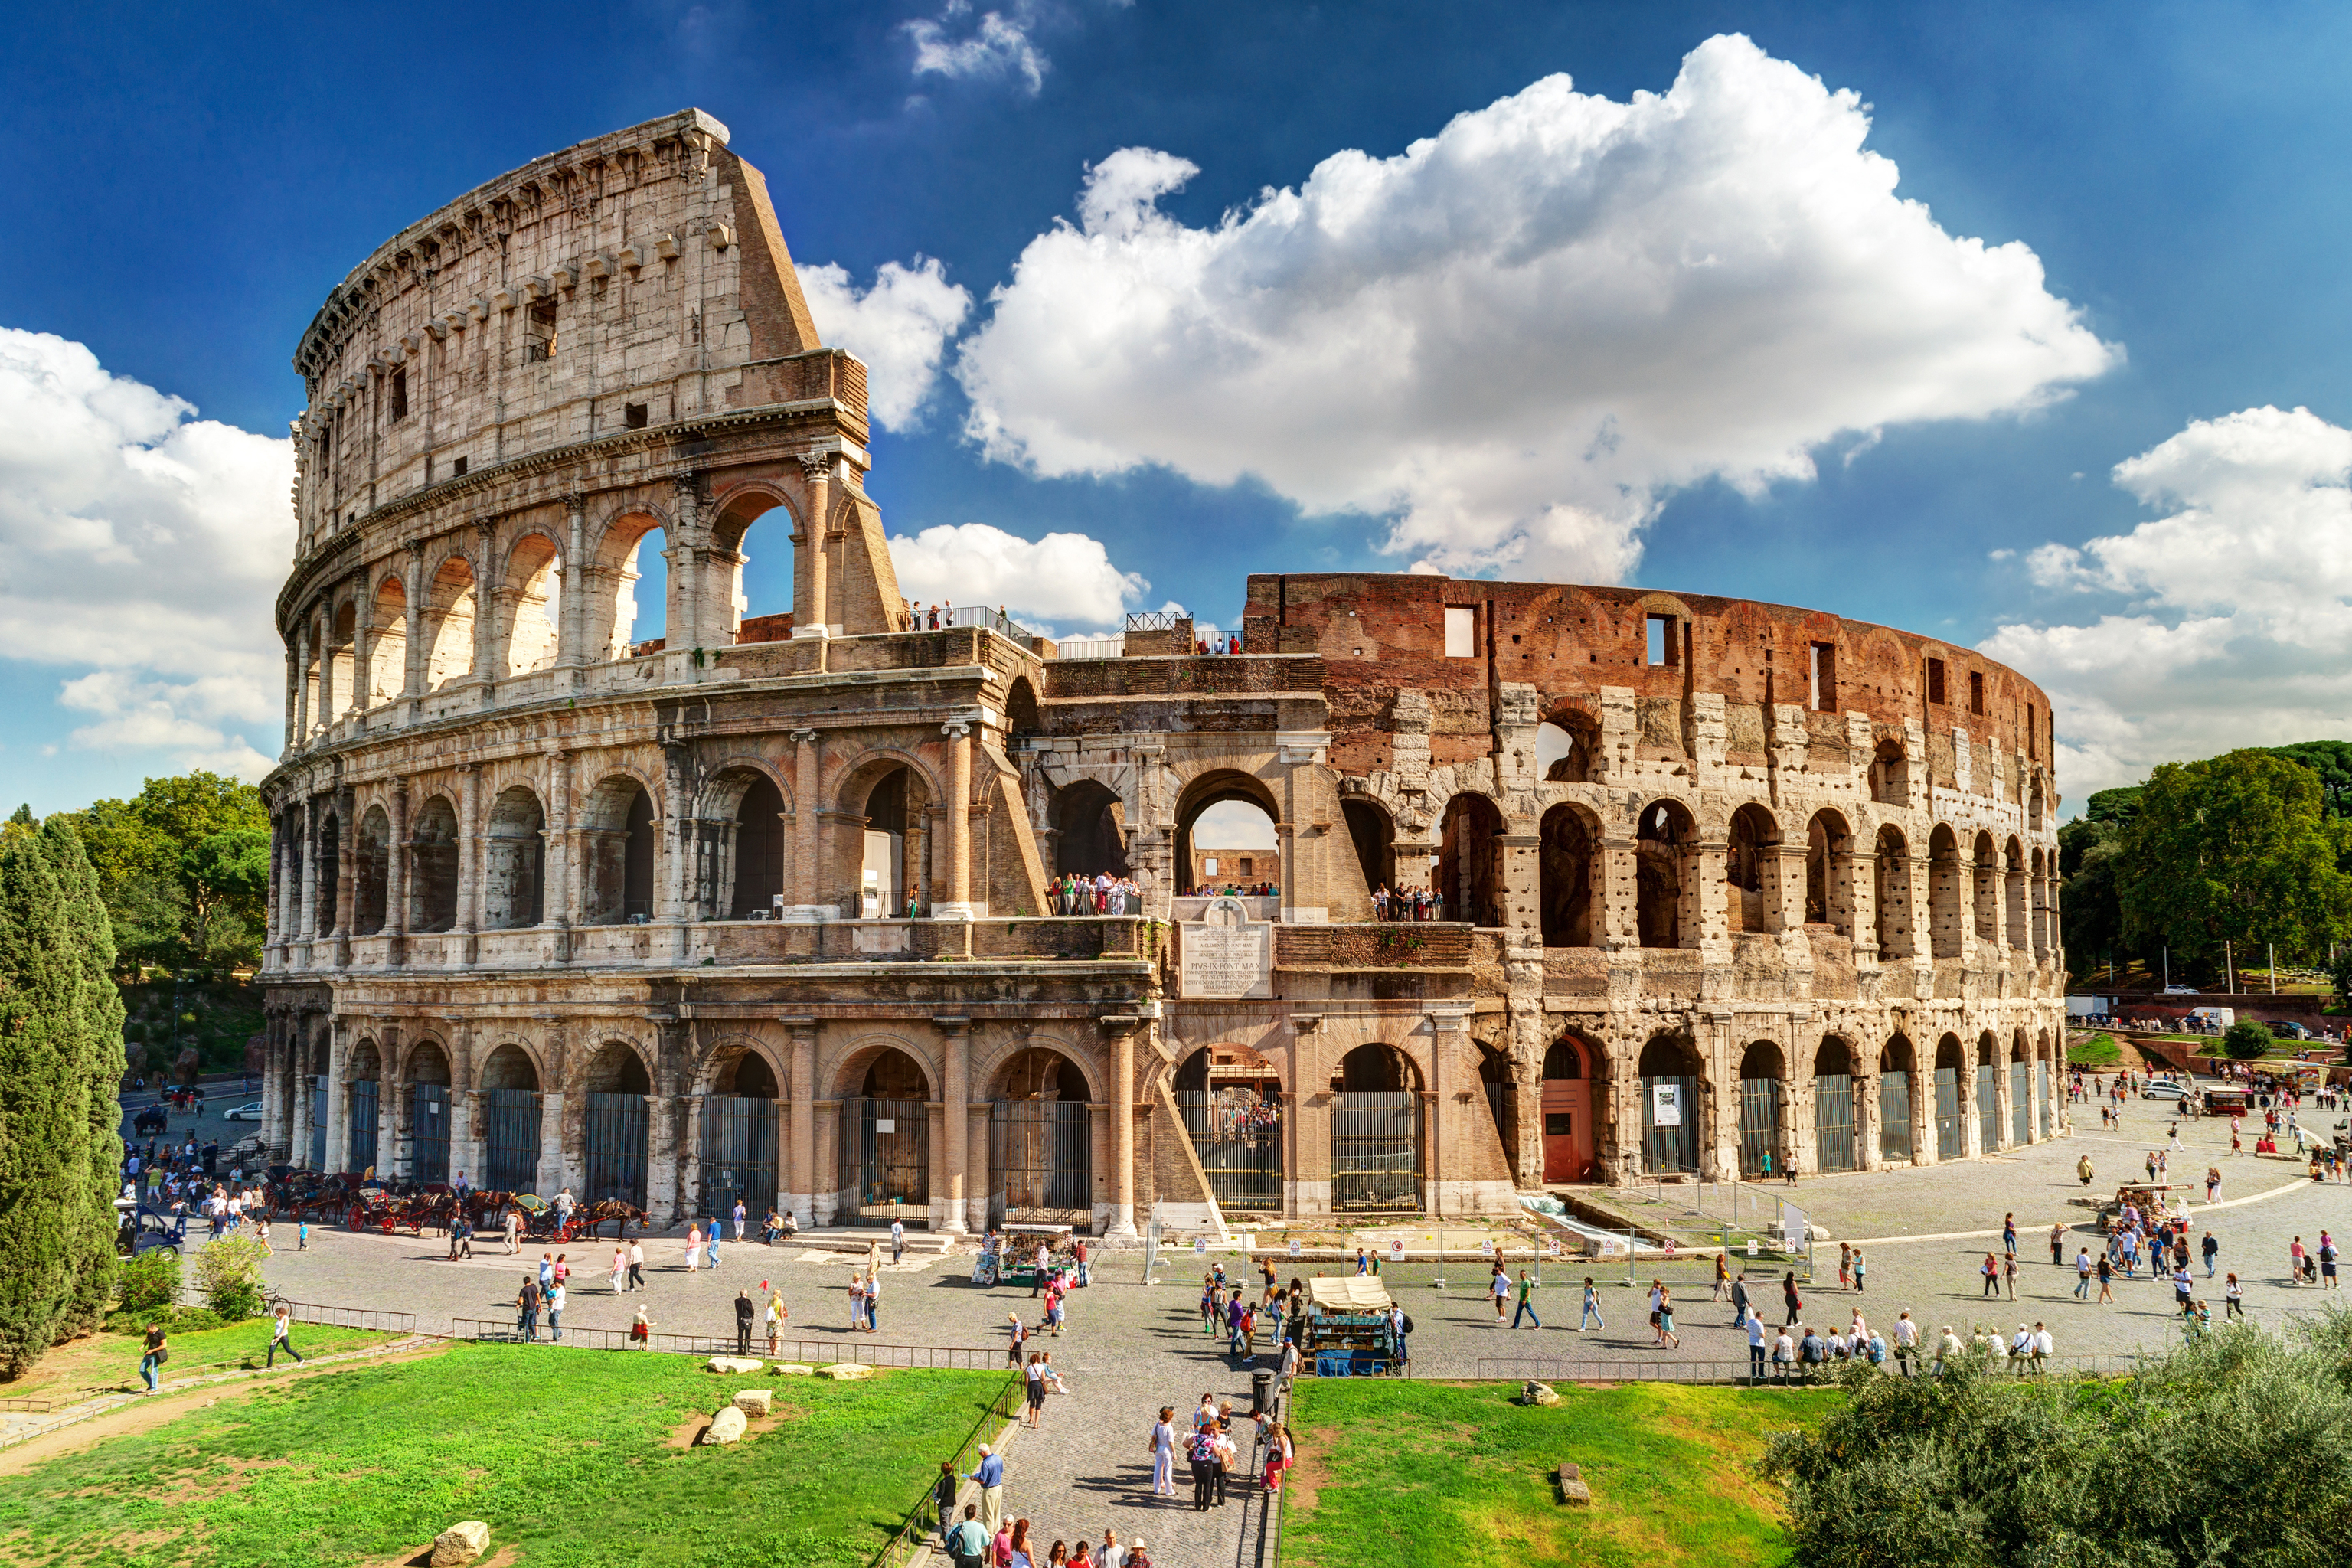 El Coliseo de Roma.